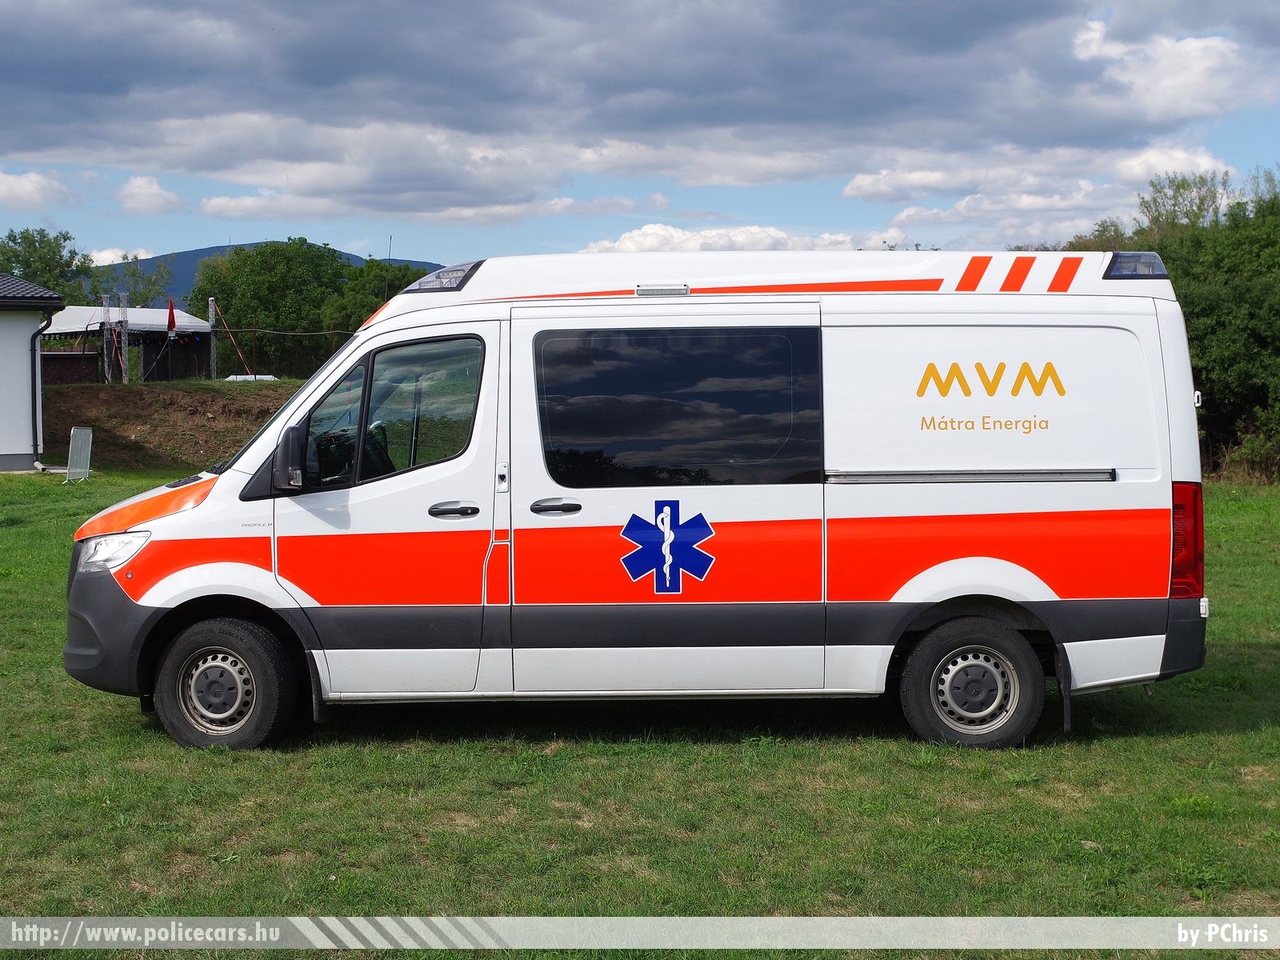 Mercedes Sprinter III Profile ambulance, MVM Mátra Energia Zrt., fotó: PChris
Keywords: mentő mentőautó magyar Magyarország hungarian Hungary ambulance RKK-371